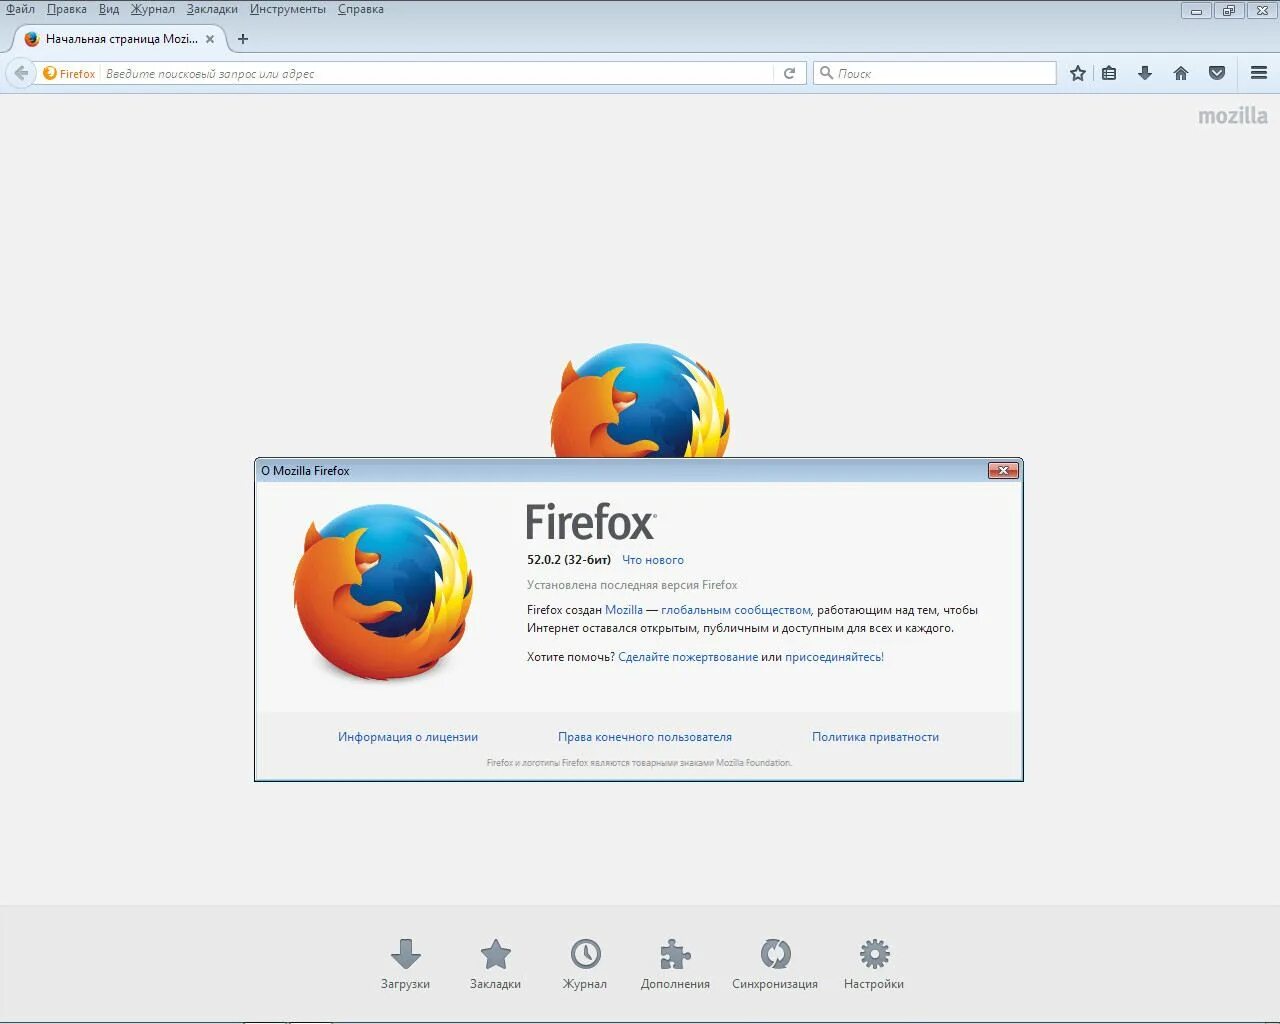 Мозила Главная страница. Фаерфокс Главная страница. Firefox последняя версия. Мазила браузер Главная страница.